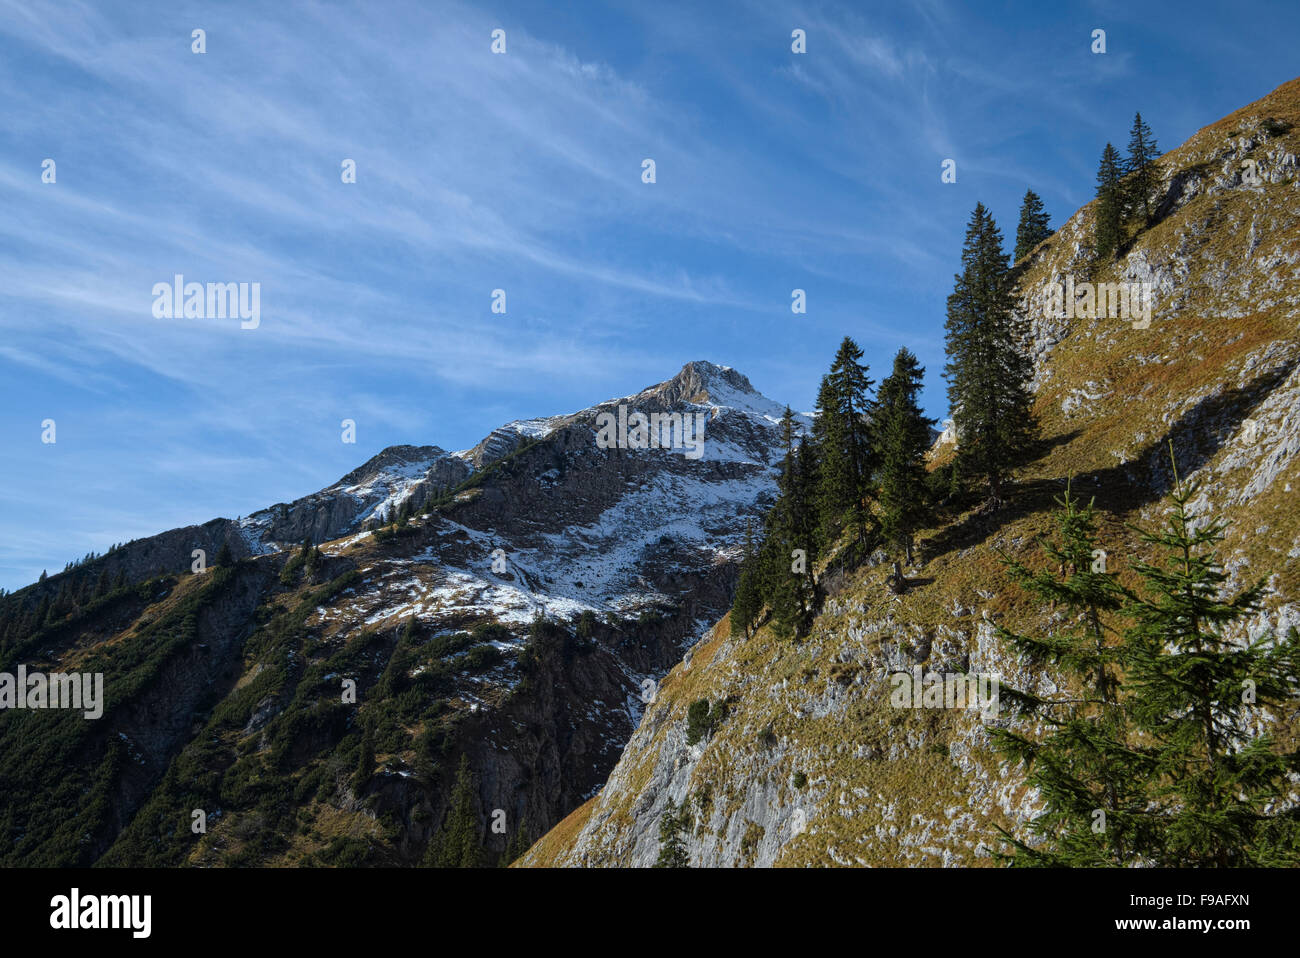 La montagne enneigée en partie à l'automne, la région Alpes Ammergau, Bavière, Allemagne Banque D'Images